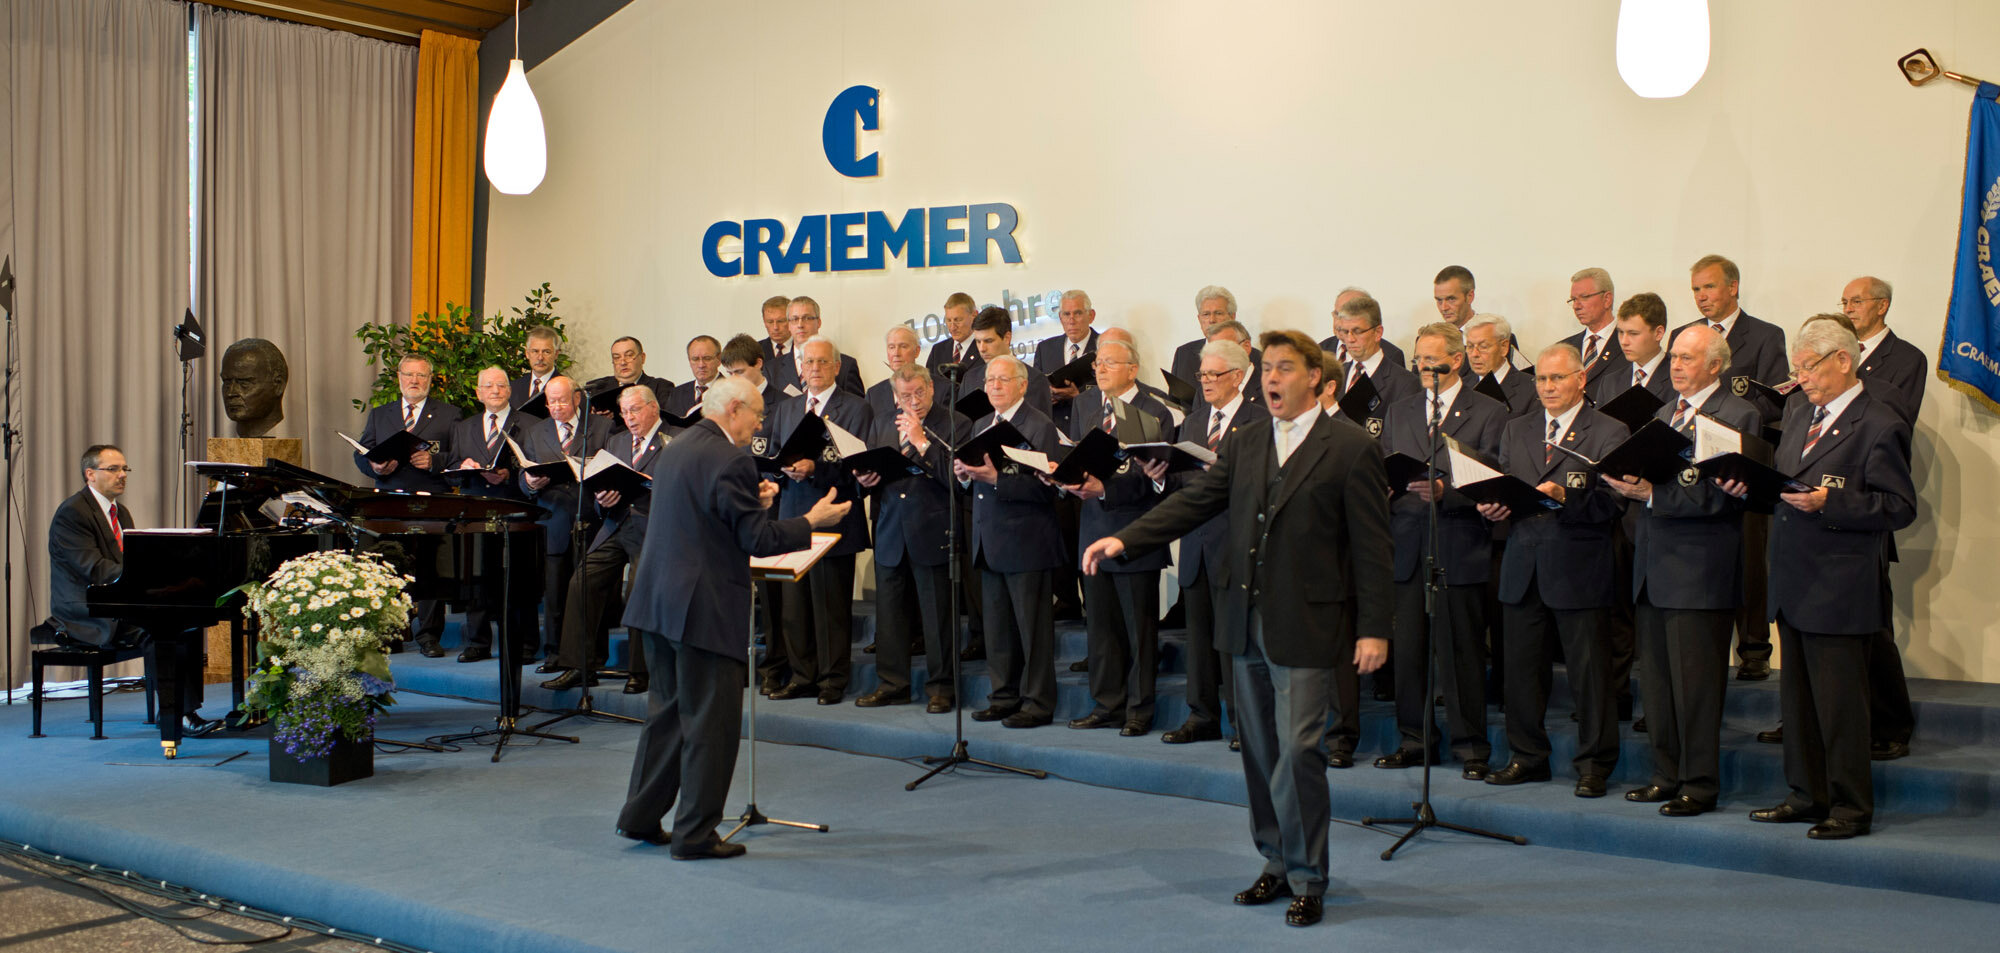 Craemer choir